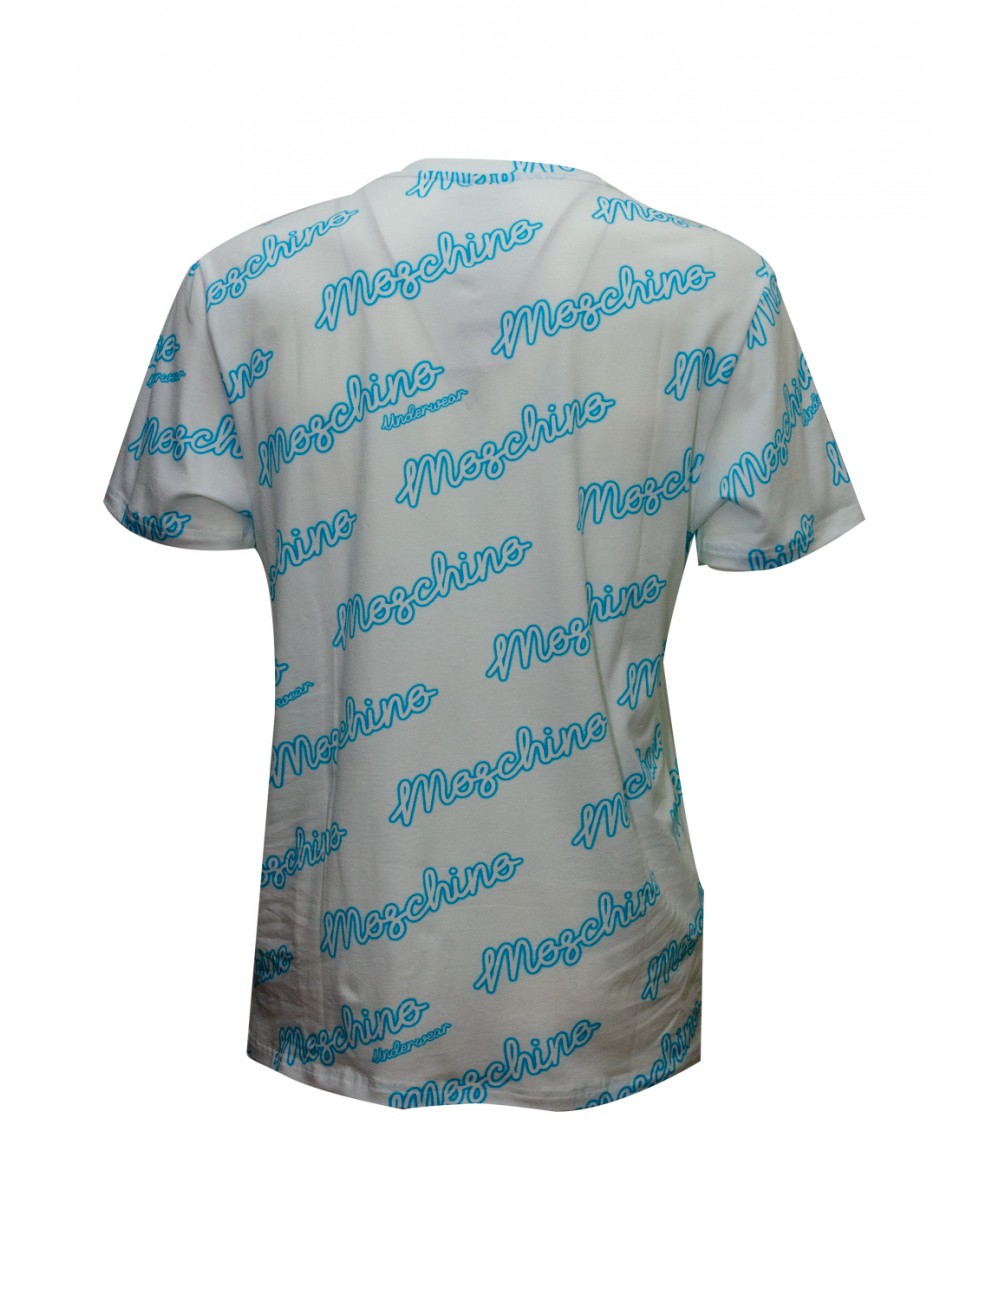 t-shirt moschino UOMO BIANCA 2001 - V1A0709 - 4417 vista frontale